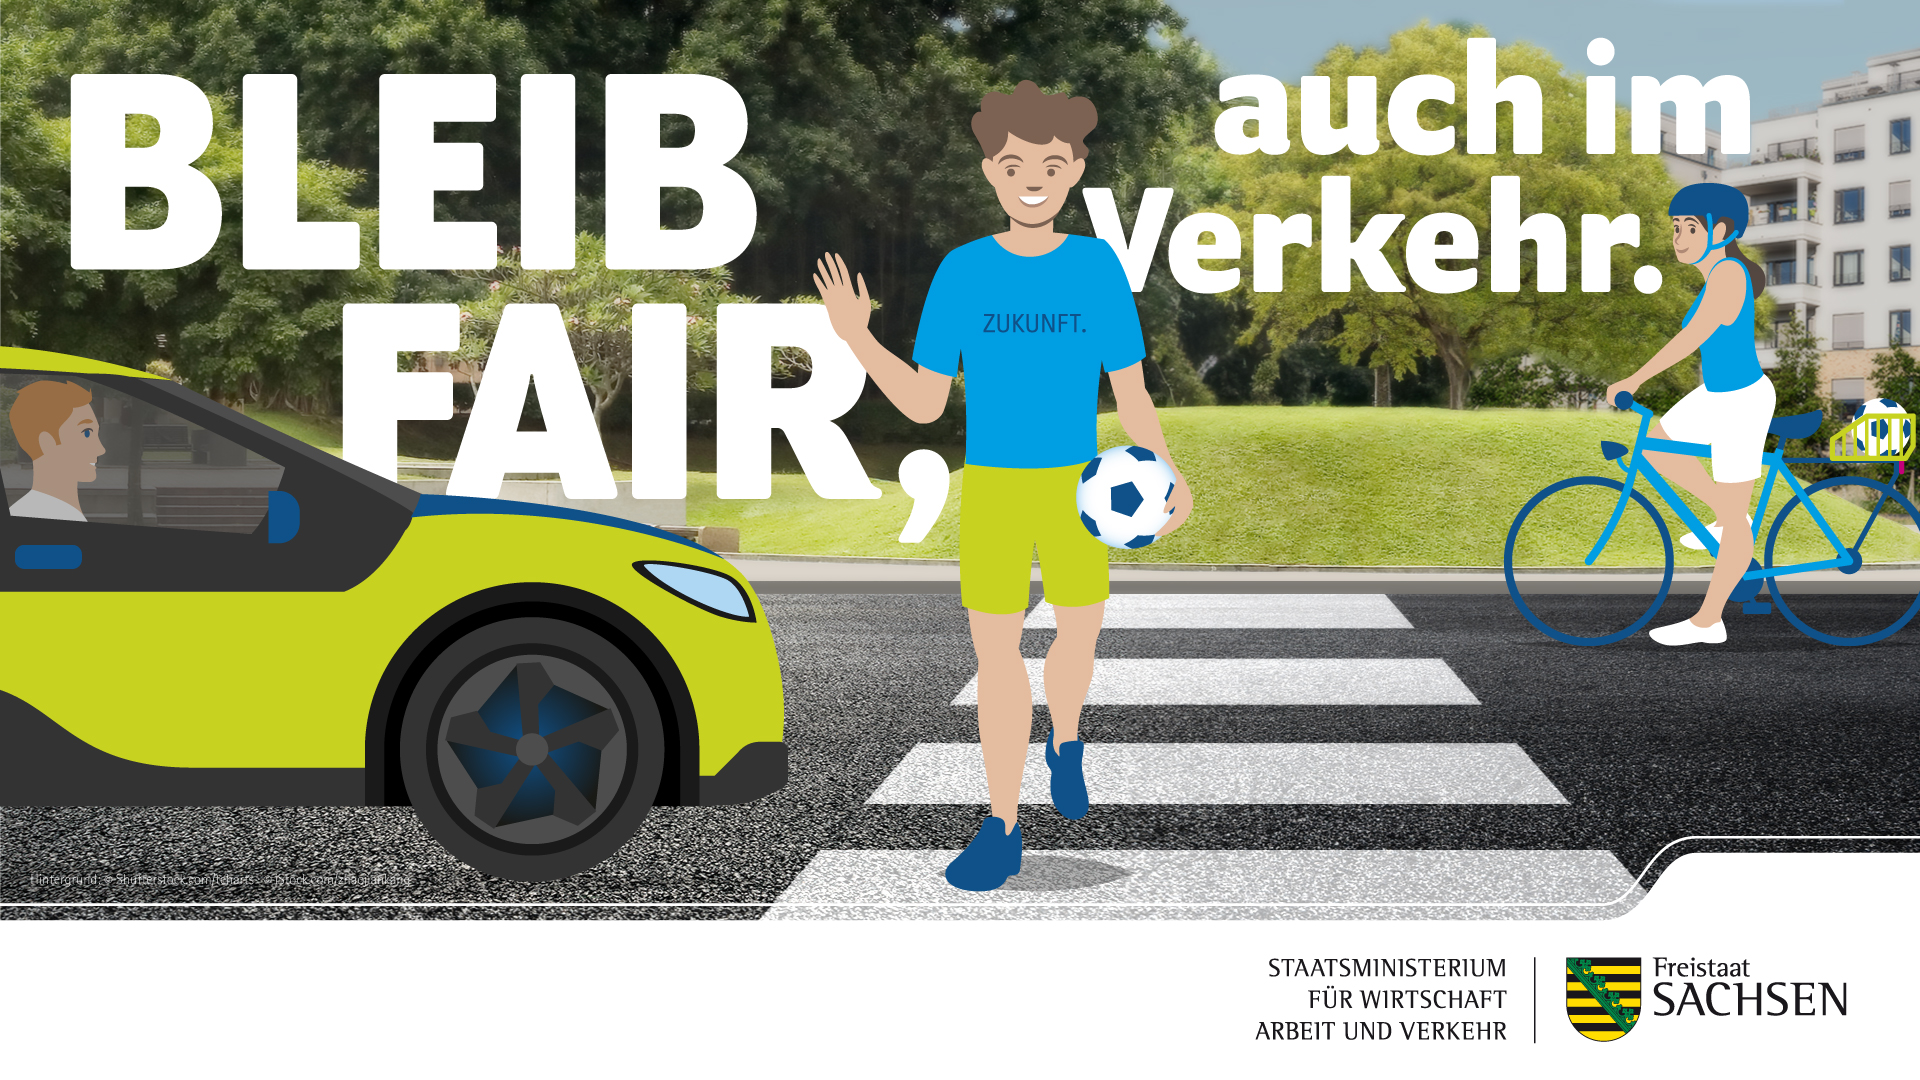 Freistaat Sachsen startet Verkehrssicherheitskampagne „Bleib fair, auch im Verkehr.“